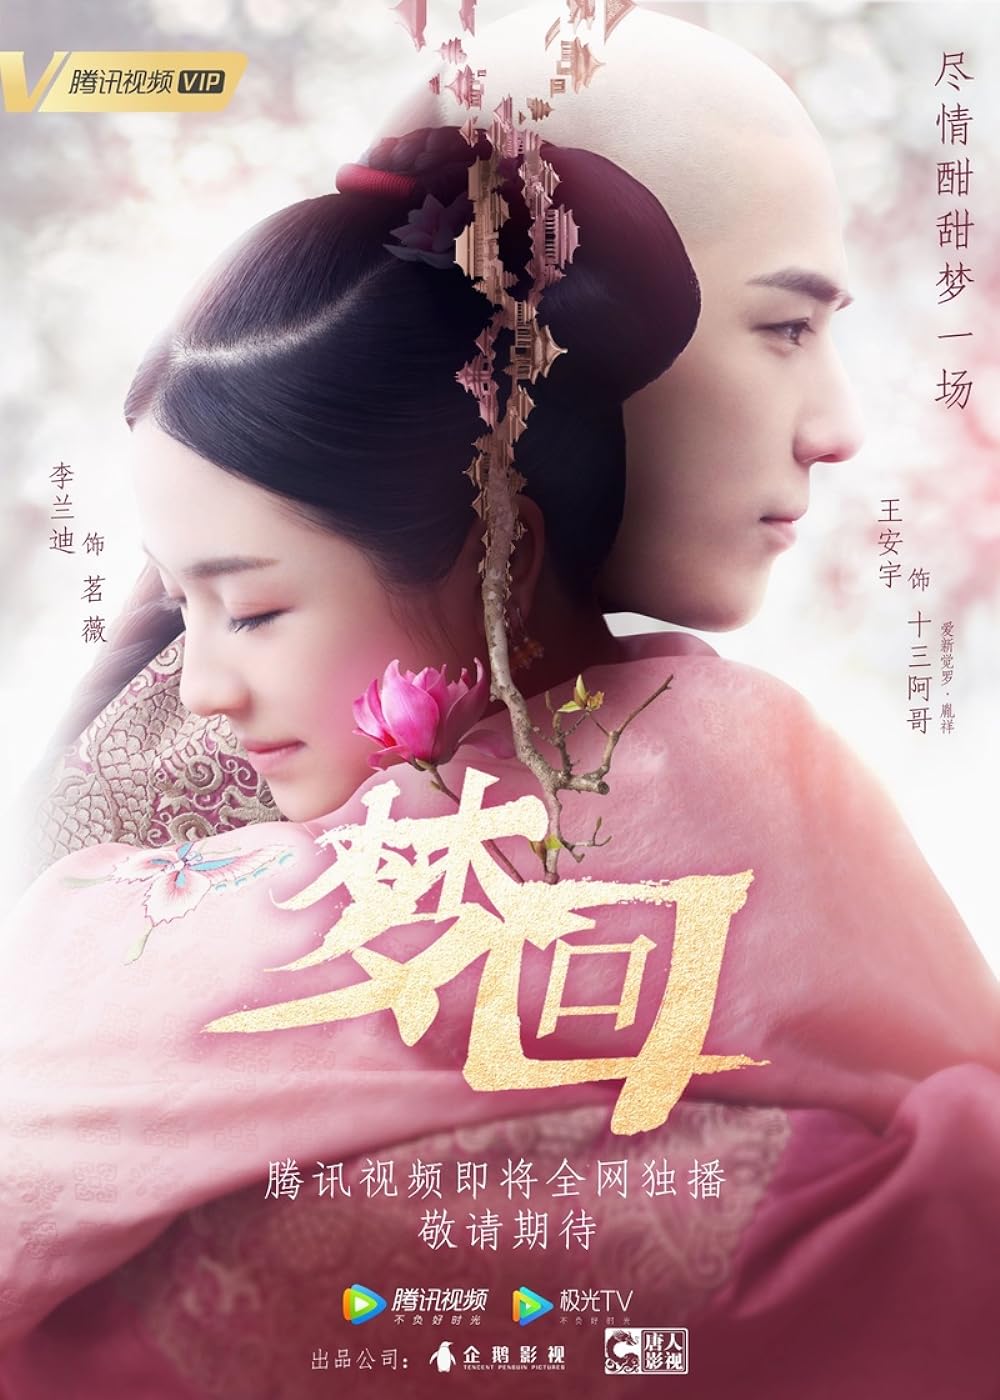 Phim của Vương An Vũ đóng: Mộng hồi Đại Thanh – Dreaming Back to the Qing Dynasty (2019)